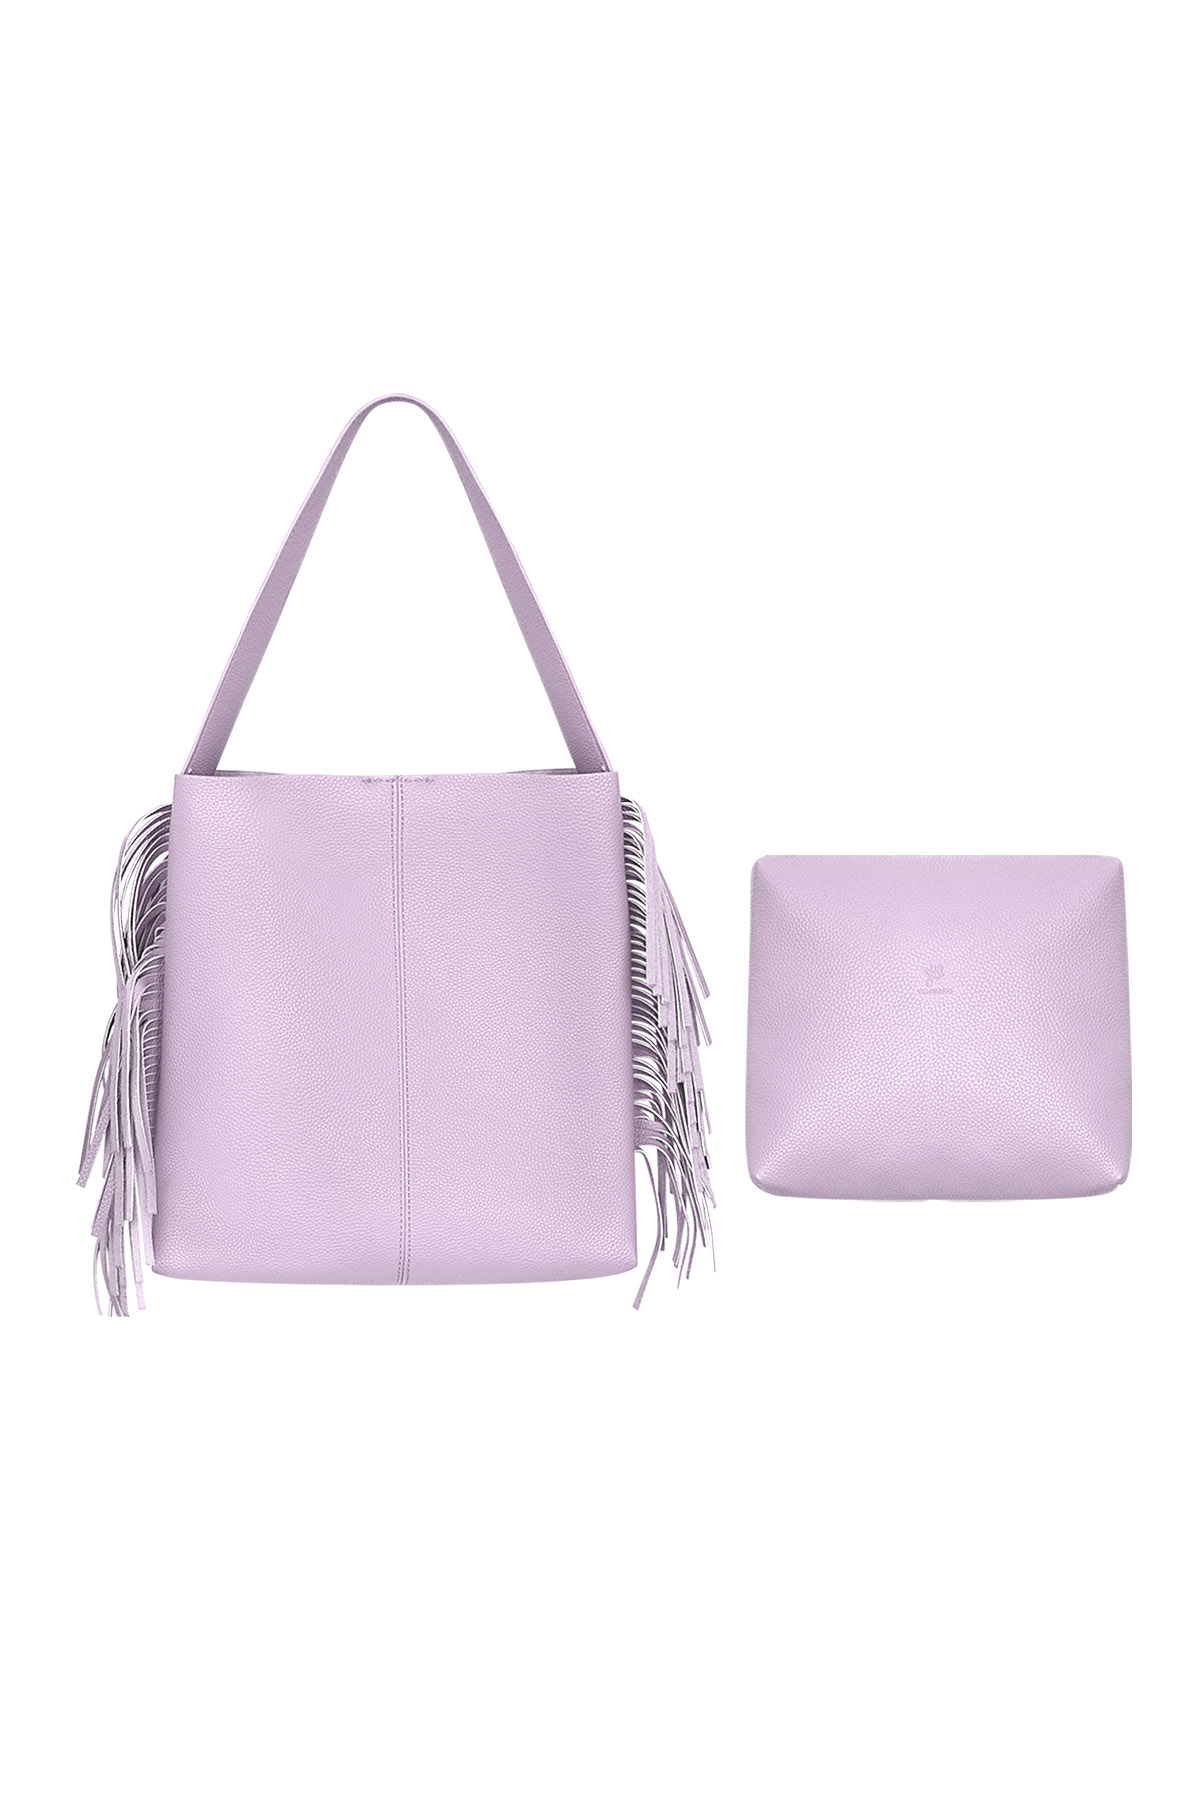 Handbag fringes - purple PU h5 